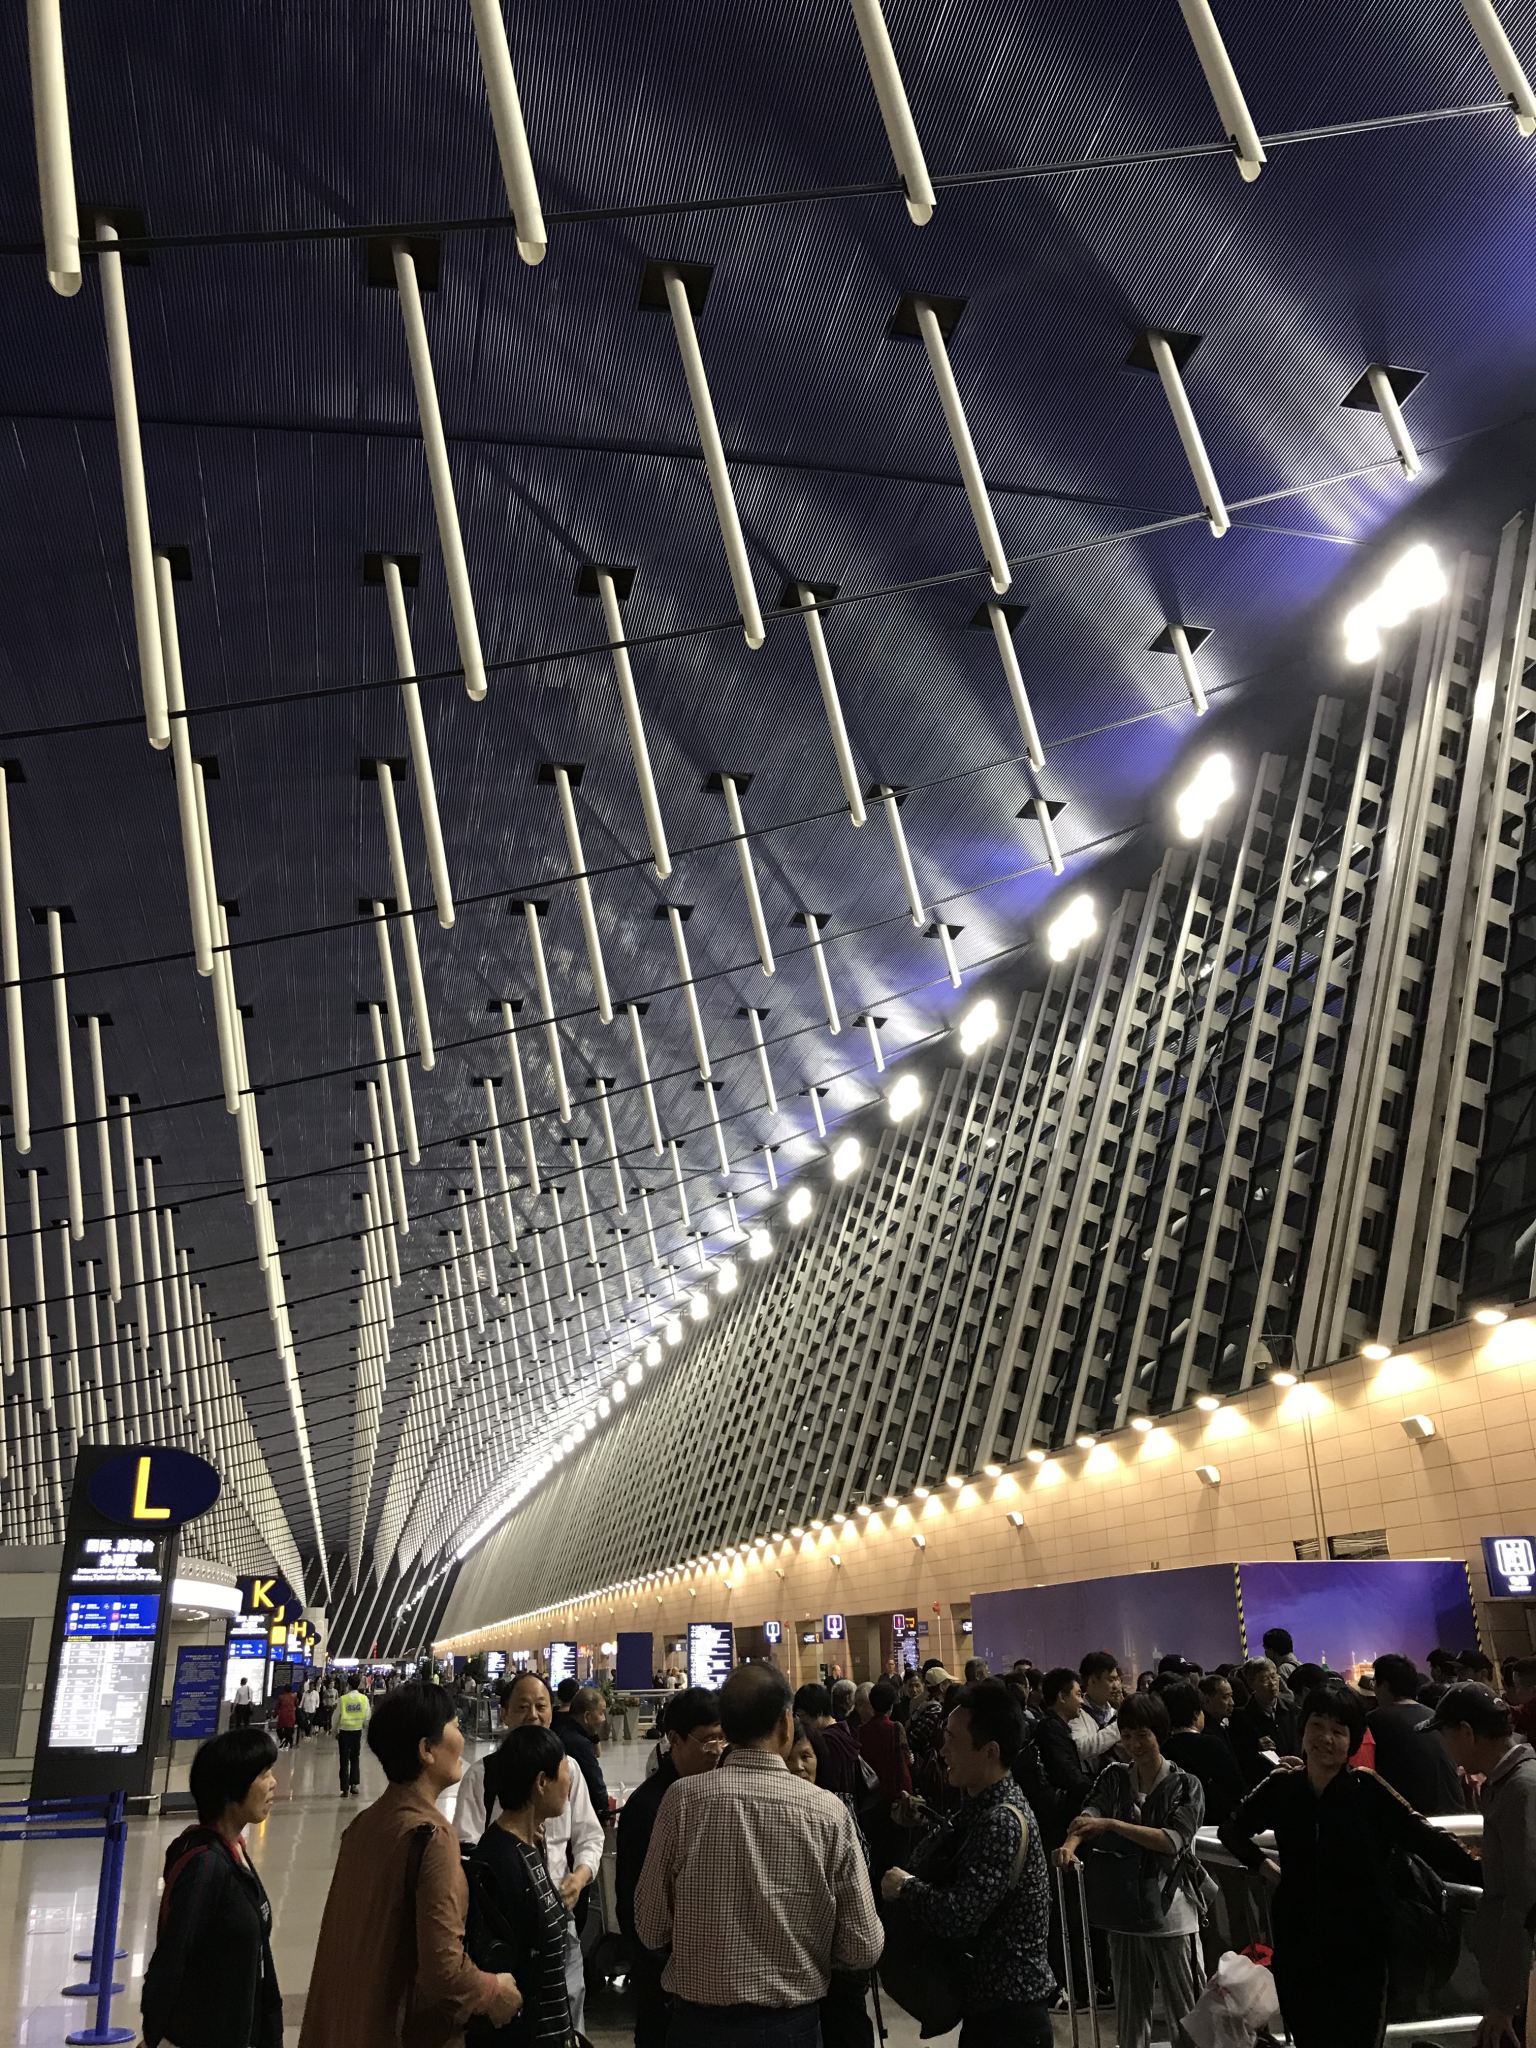 上海浦东国际机场夜景图片